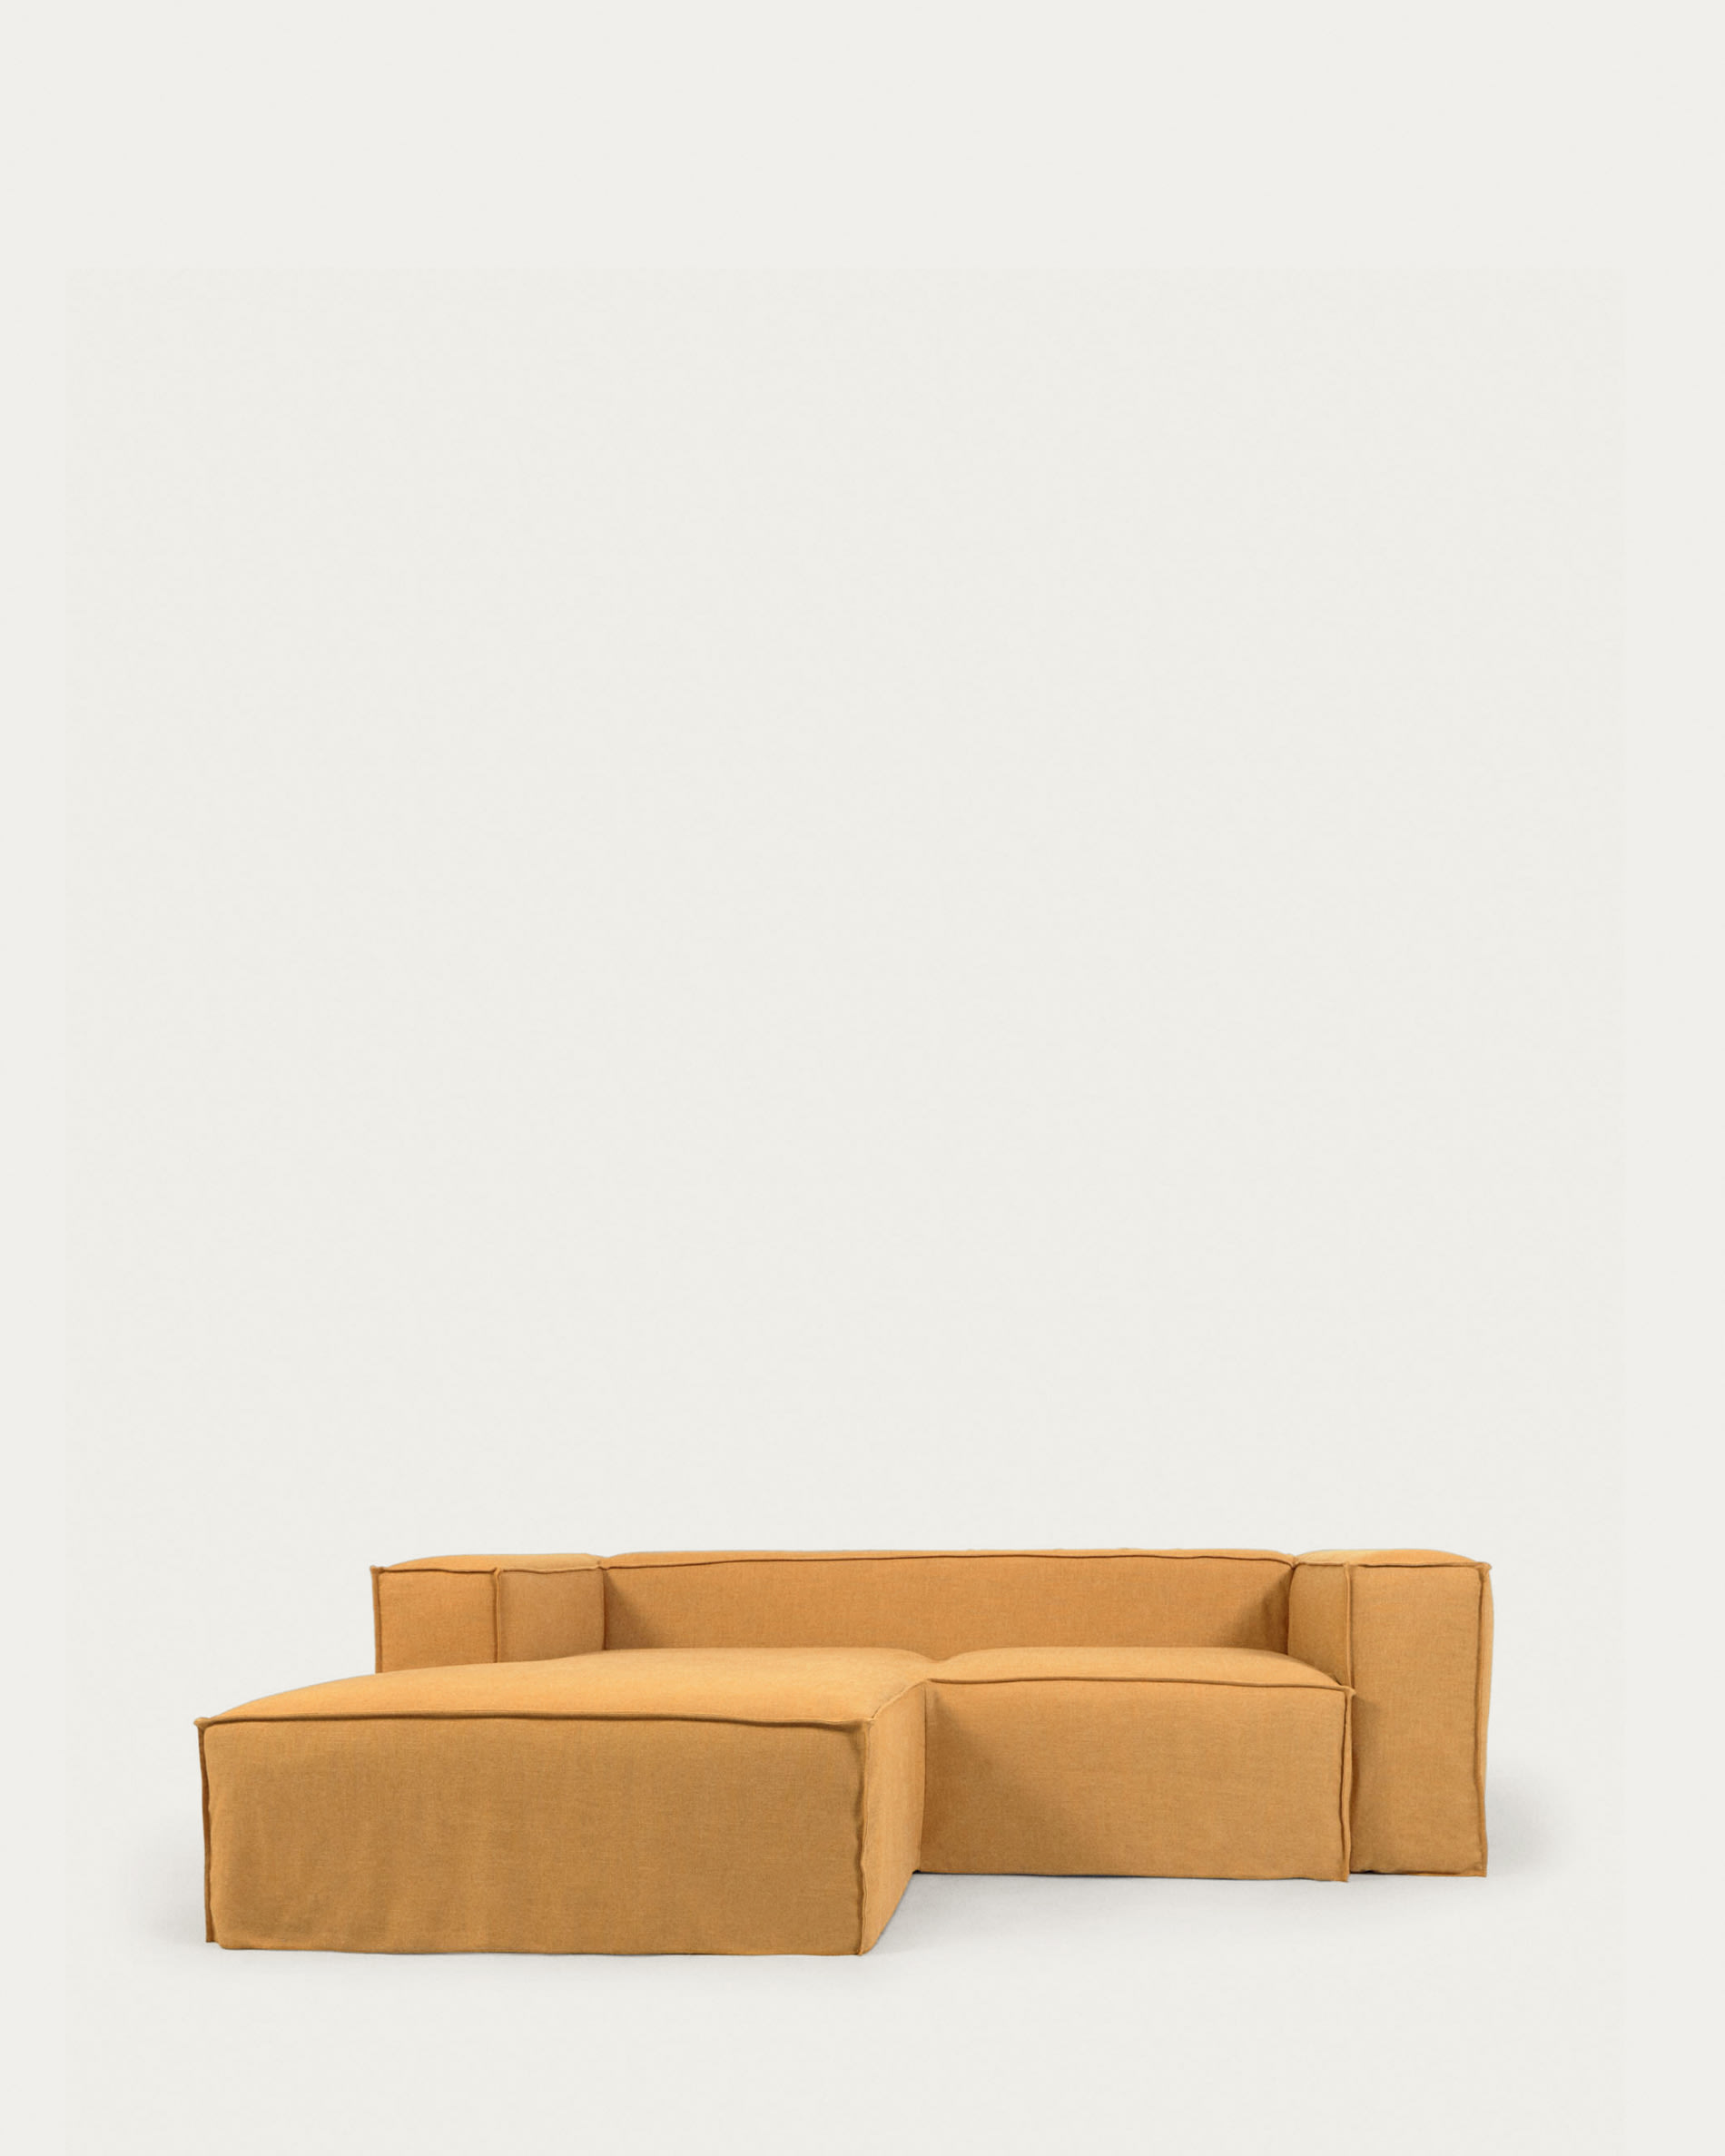 Fodera per divano Blok 3 posti in lino bianco